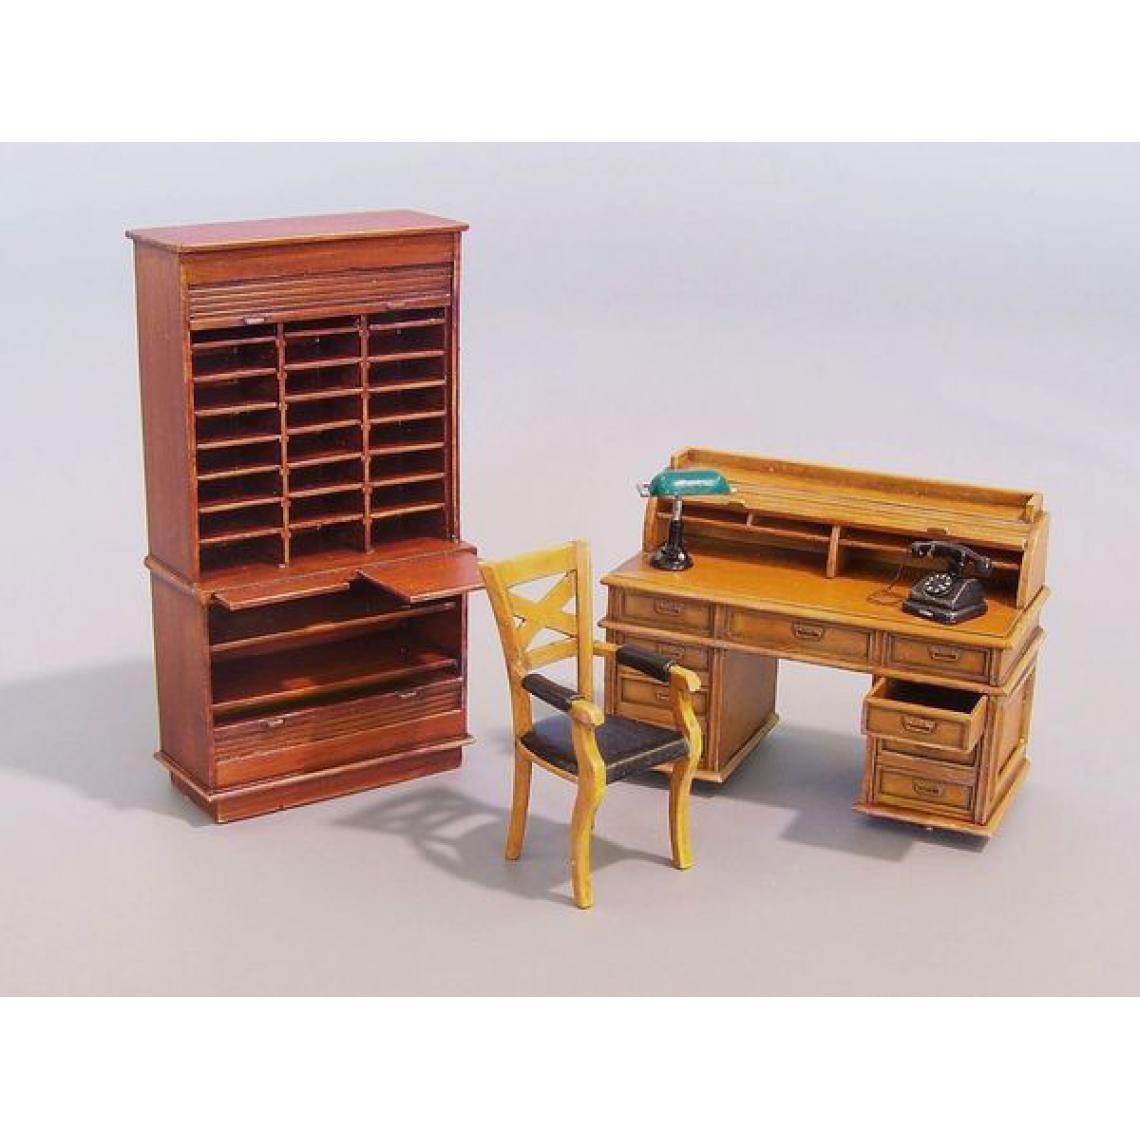 Plus Model - Office furniture - 1:35e - Plus model - Accessoires et pièces